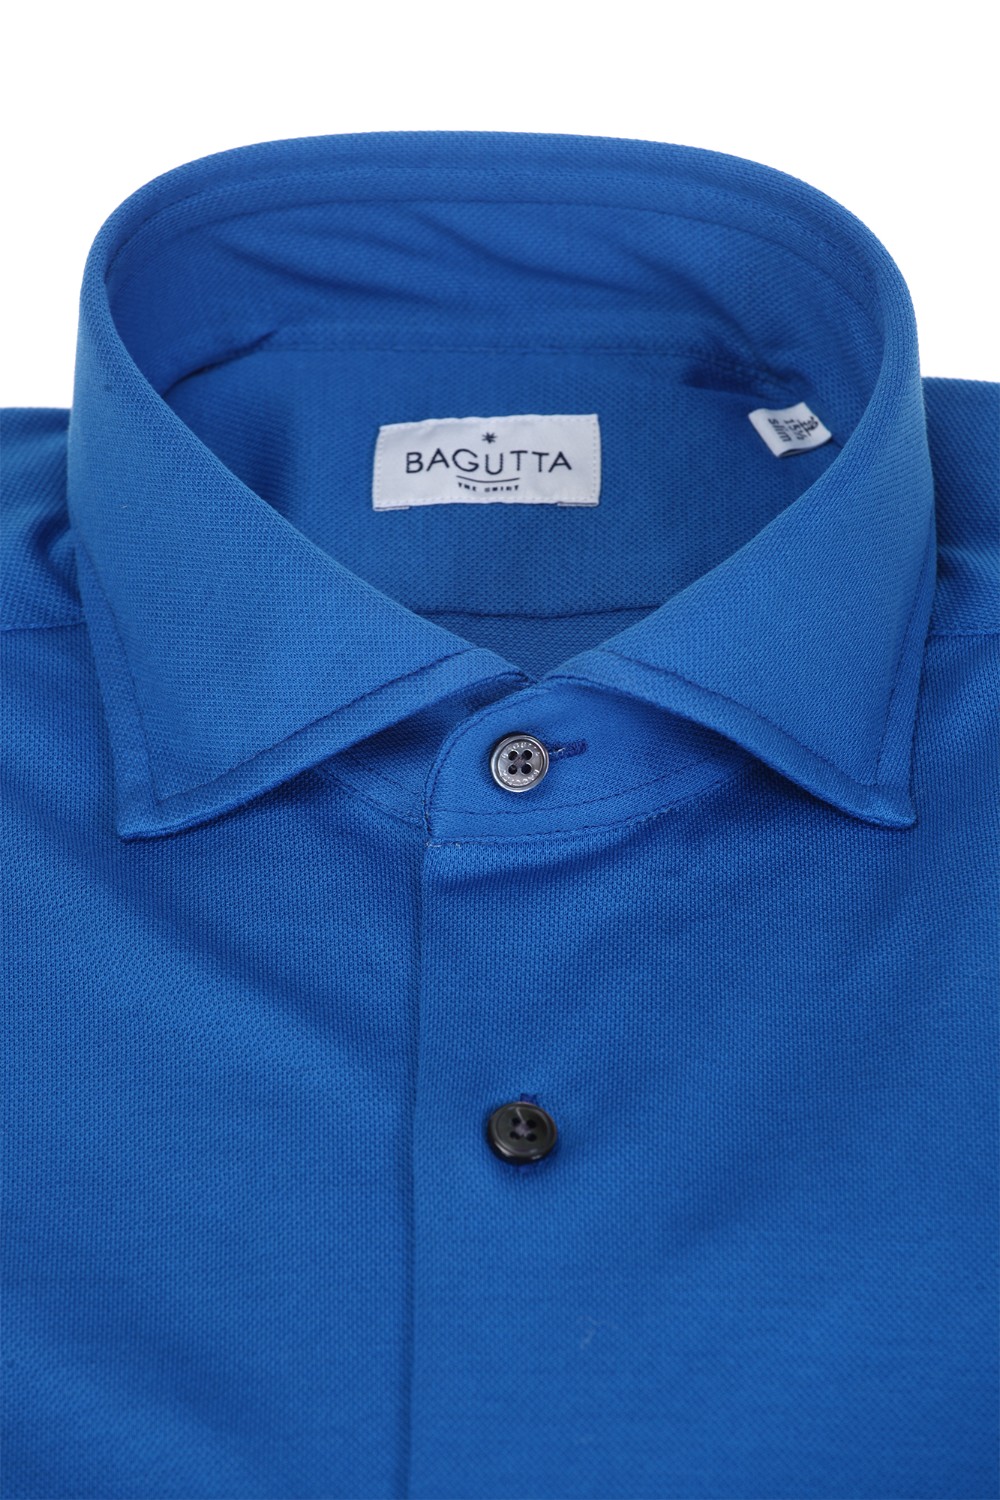 shop BAGUTTA  Camicia: Bagutta camicia in jersey di cotone.
Maniche lunghe.
Regular fit.
Composizione: 100% cotone.
Fabbricato in Albania.. WALTER EBLF 11879-050 number 6364559